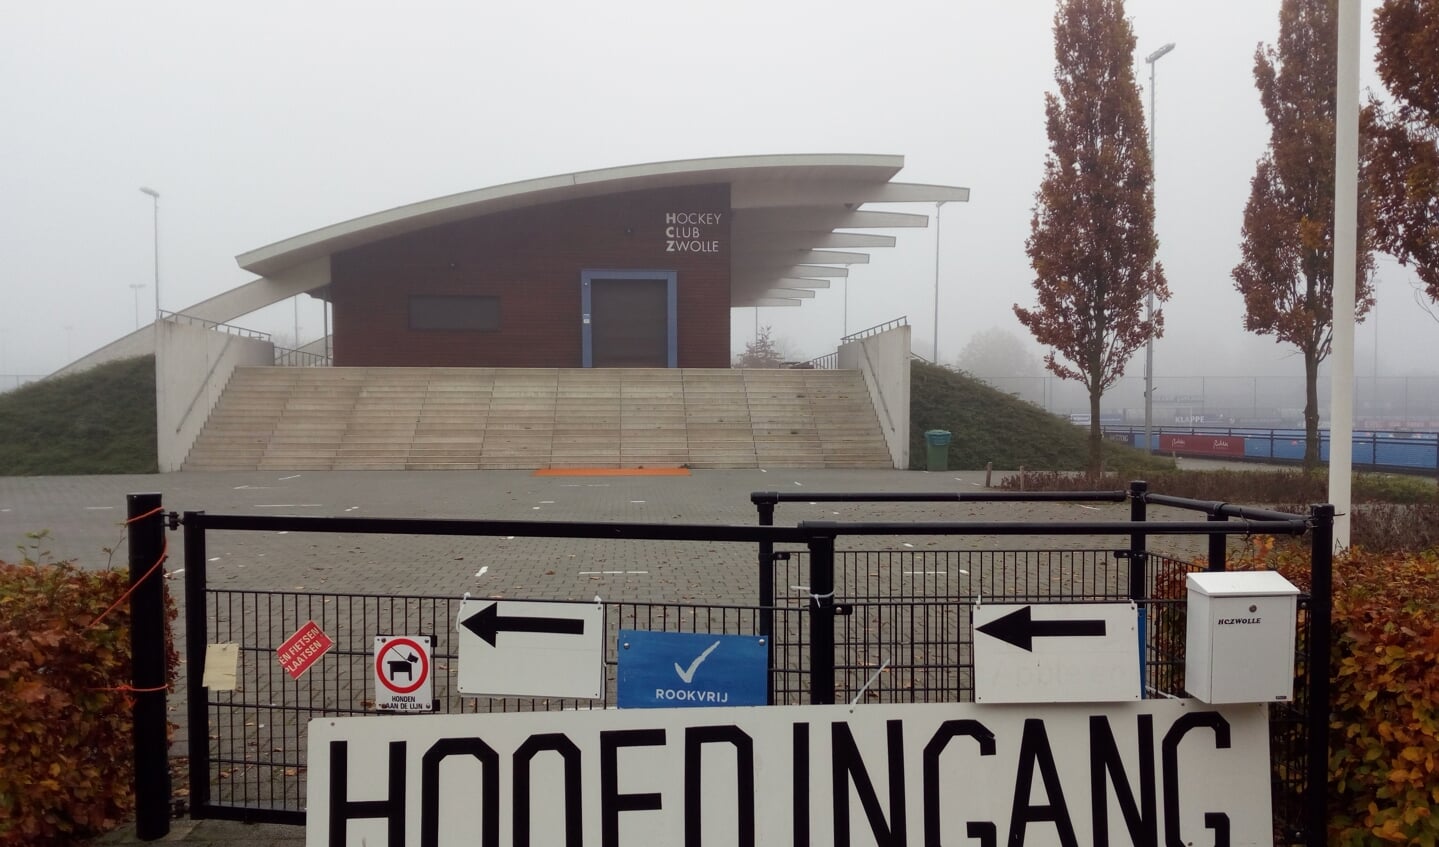 De entree van HC Zwolle (verplaatst in coronatijd)